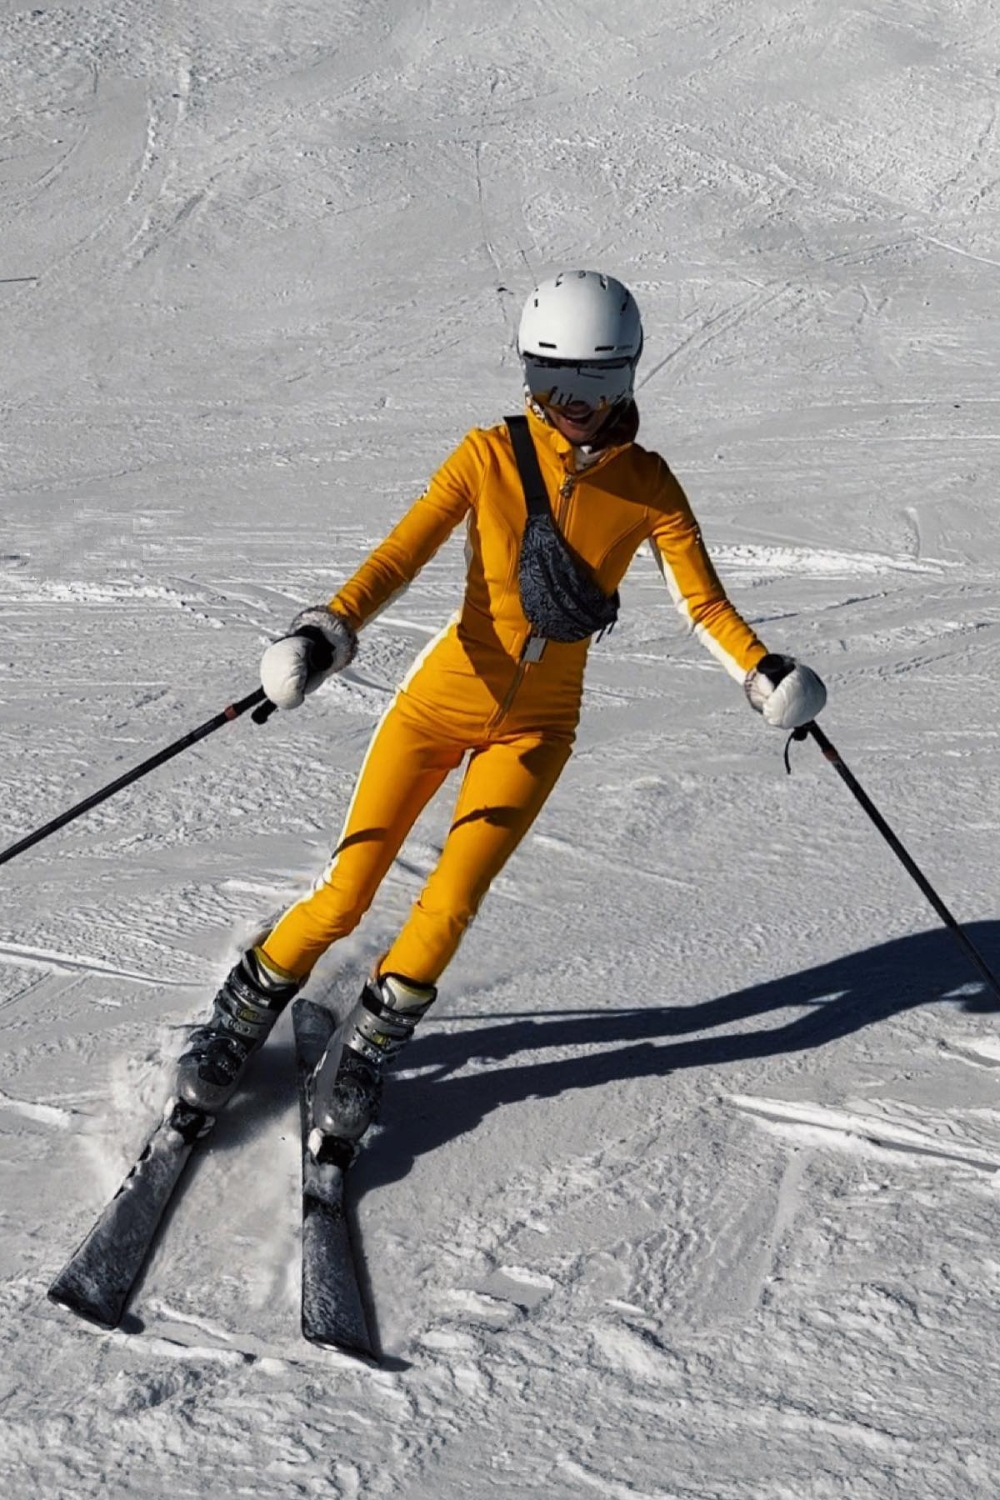 Ski Outfit Ideas - Yellow Ski Suit